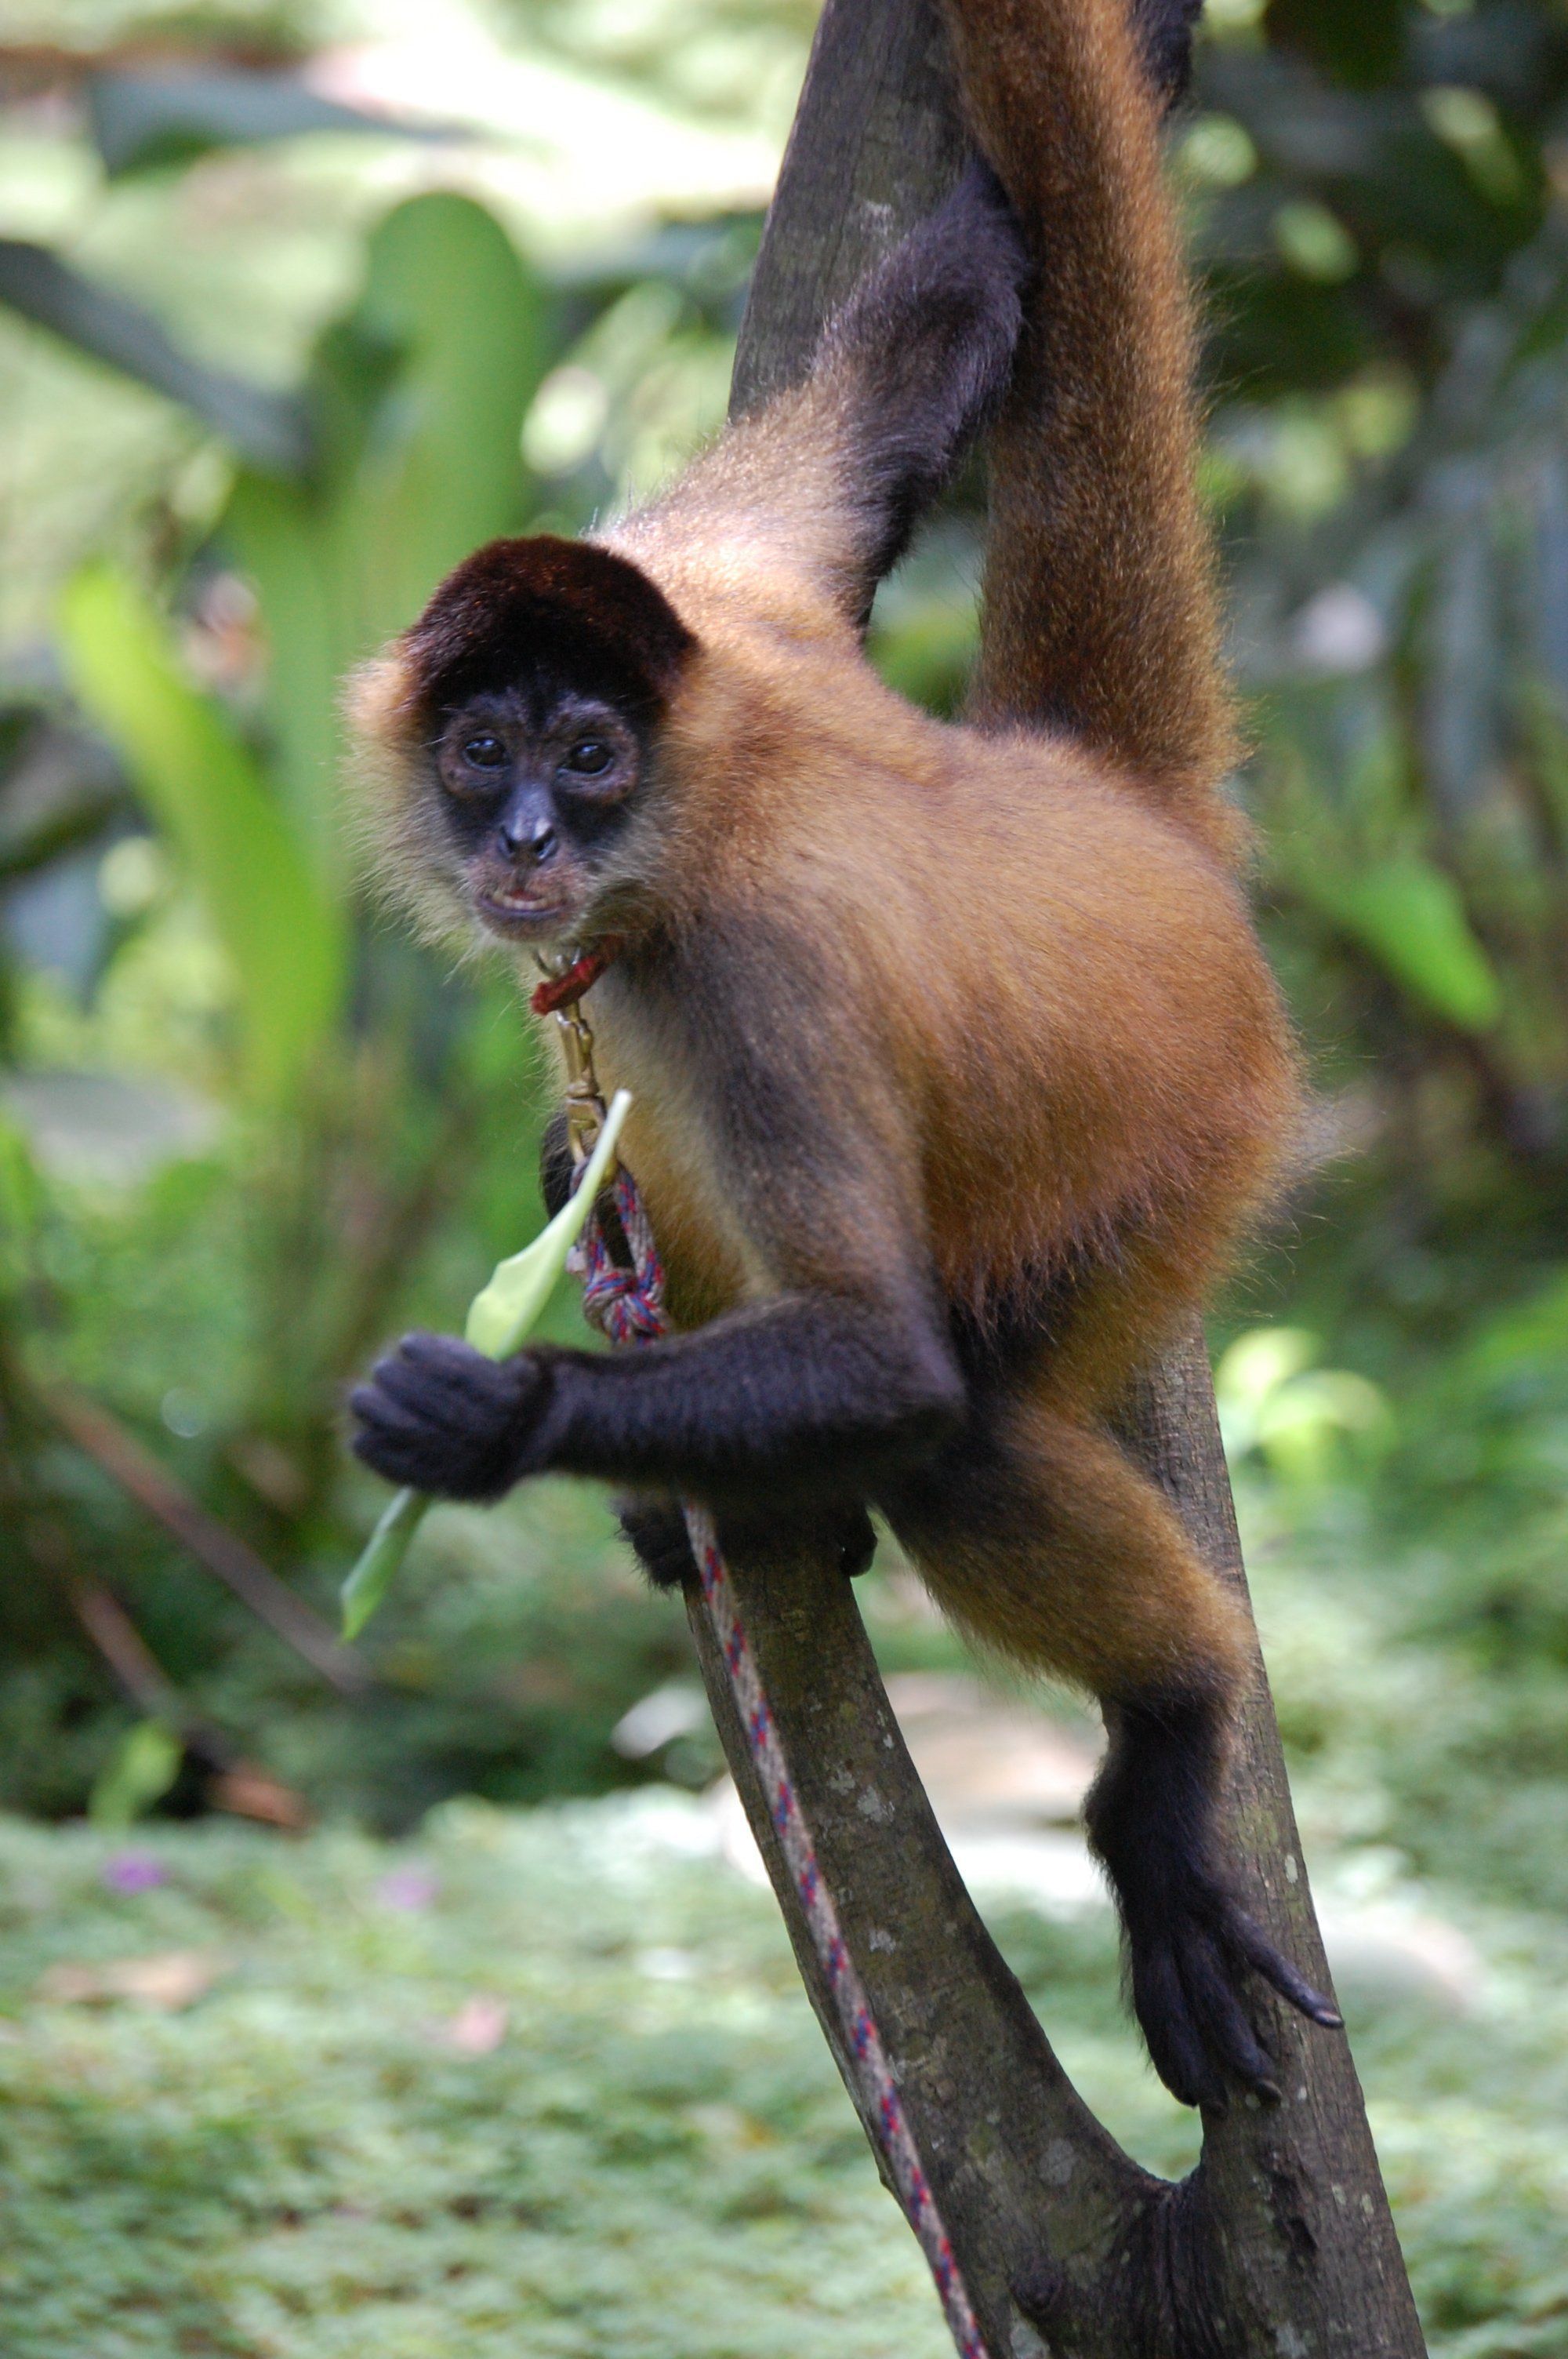 Sex determination of a spider monkey